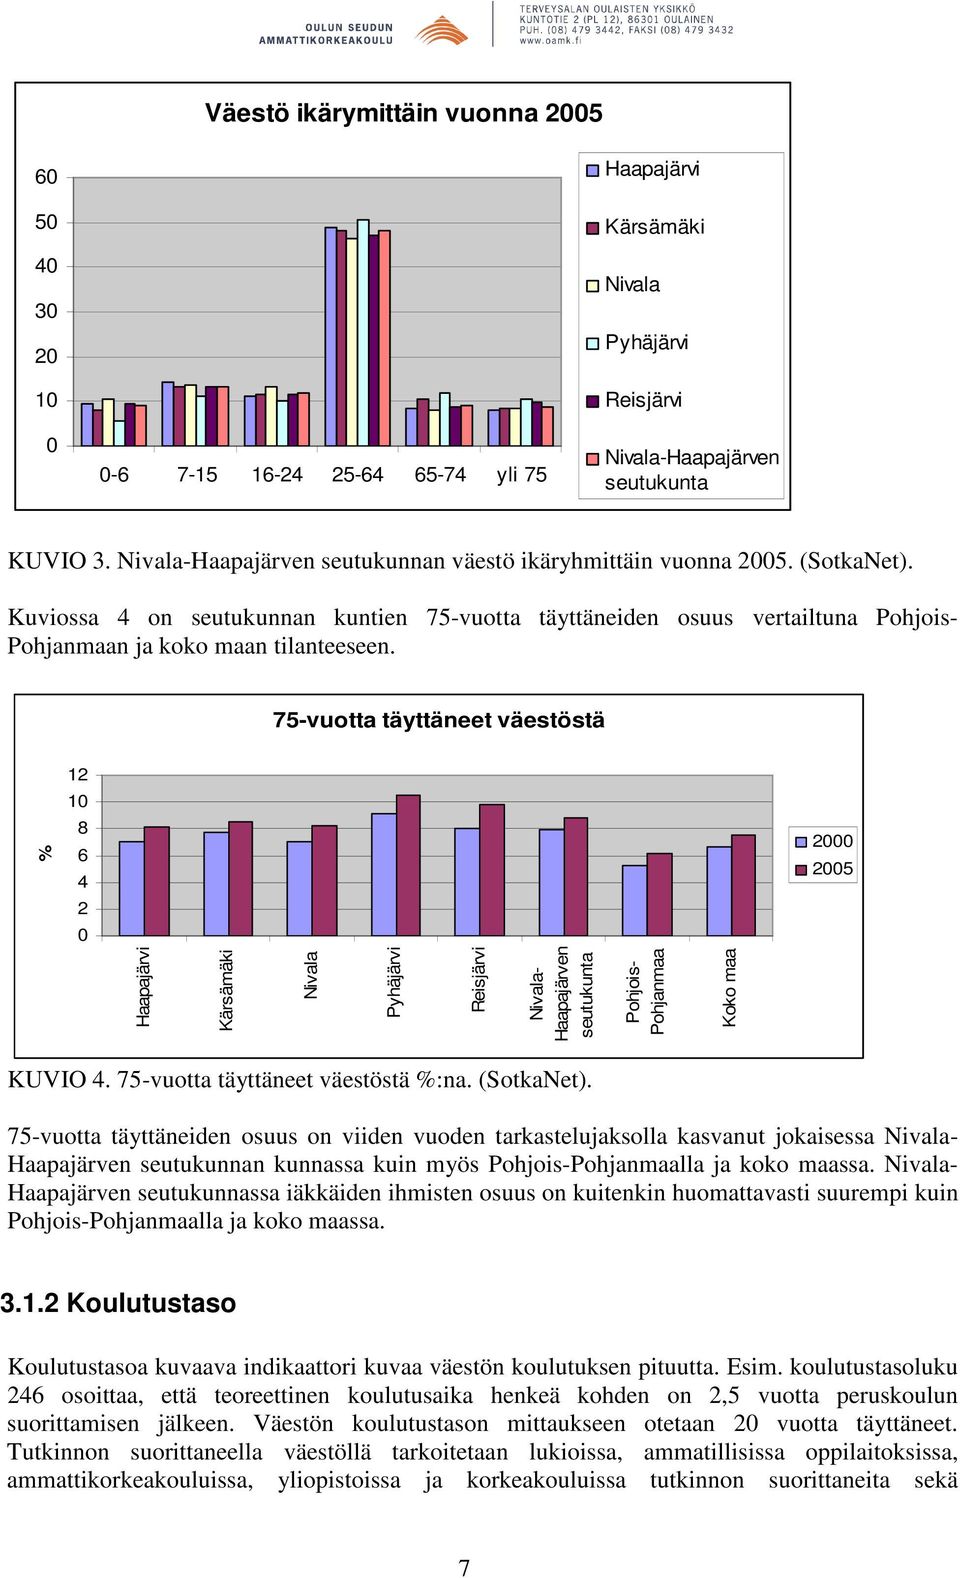 75-vuotta täyttäneet väestöstä 12 1 % 8 6 4 2 2 25 - Haapajärven seutukunta Pohjois- Pohjanmaa Koko maa KUVIO 4. 75-vuotta täyttäneet väestöstä %:na. (SotkaNet).